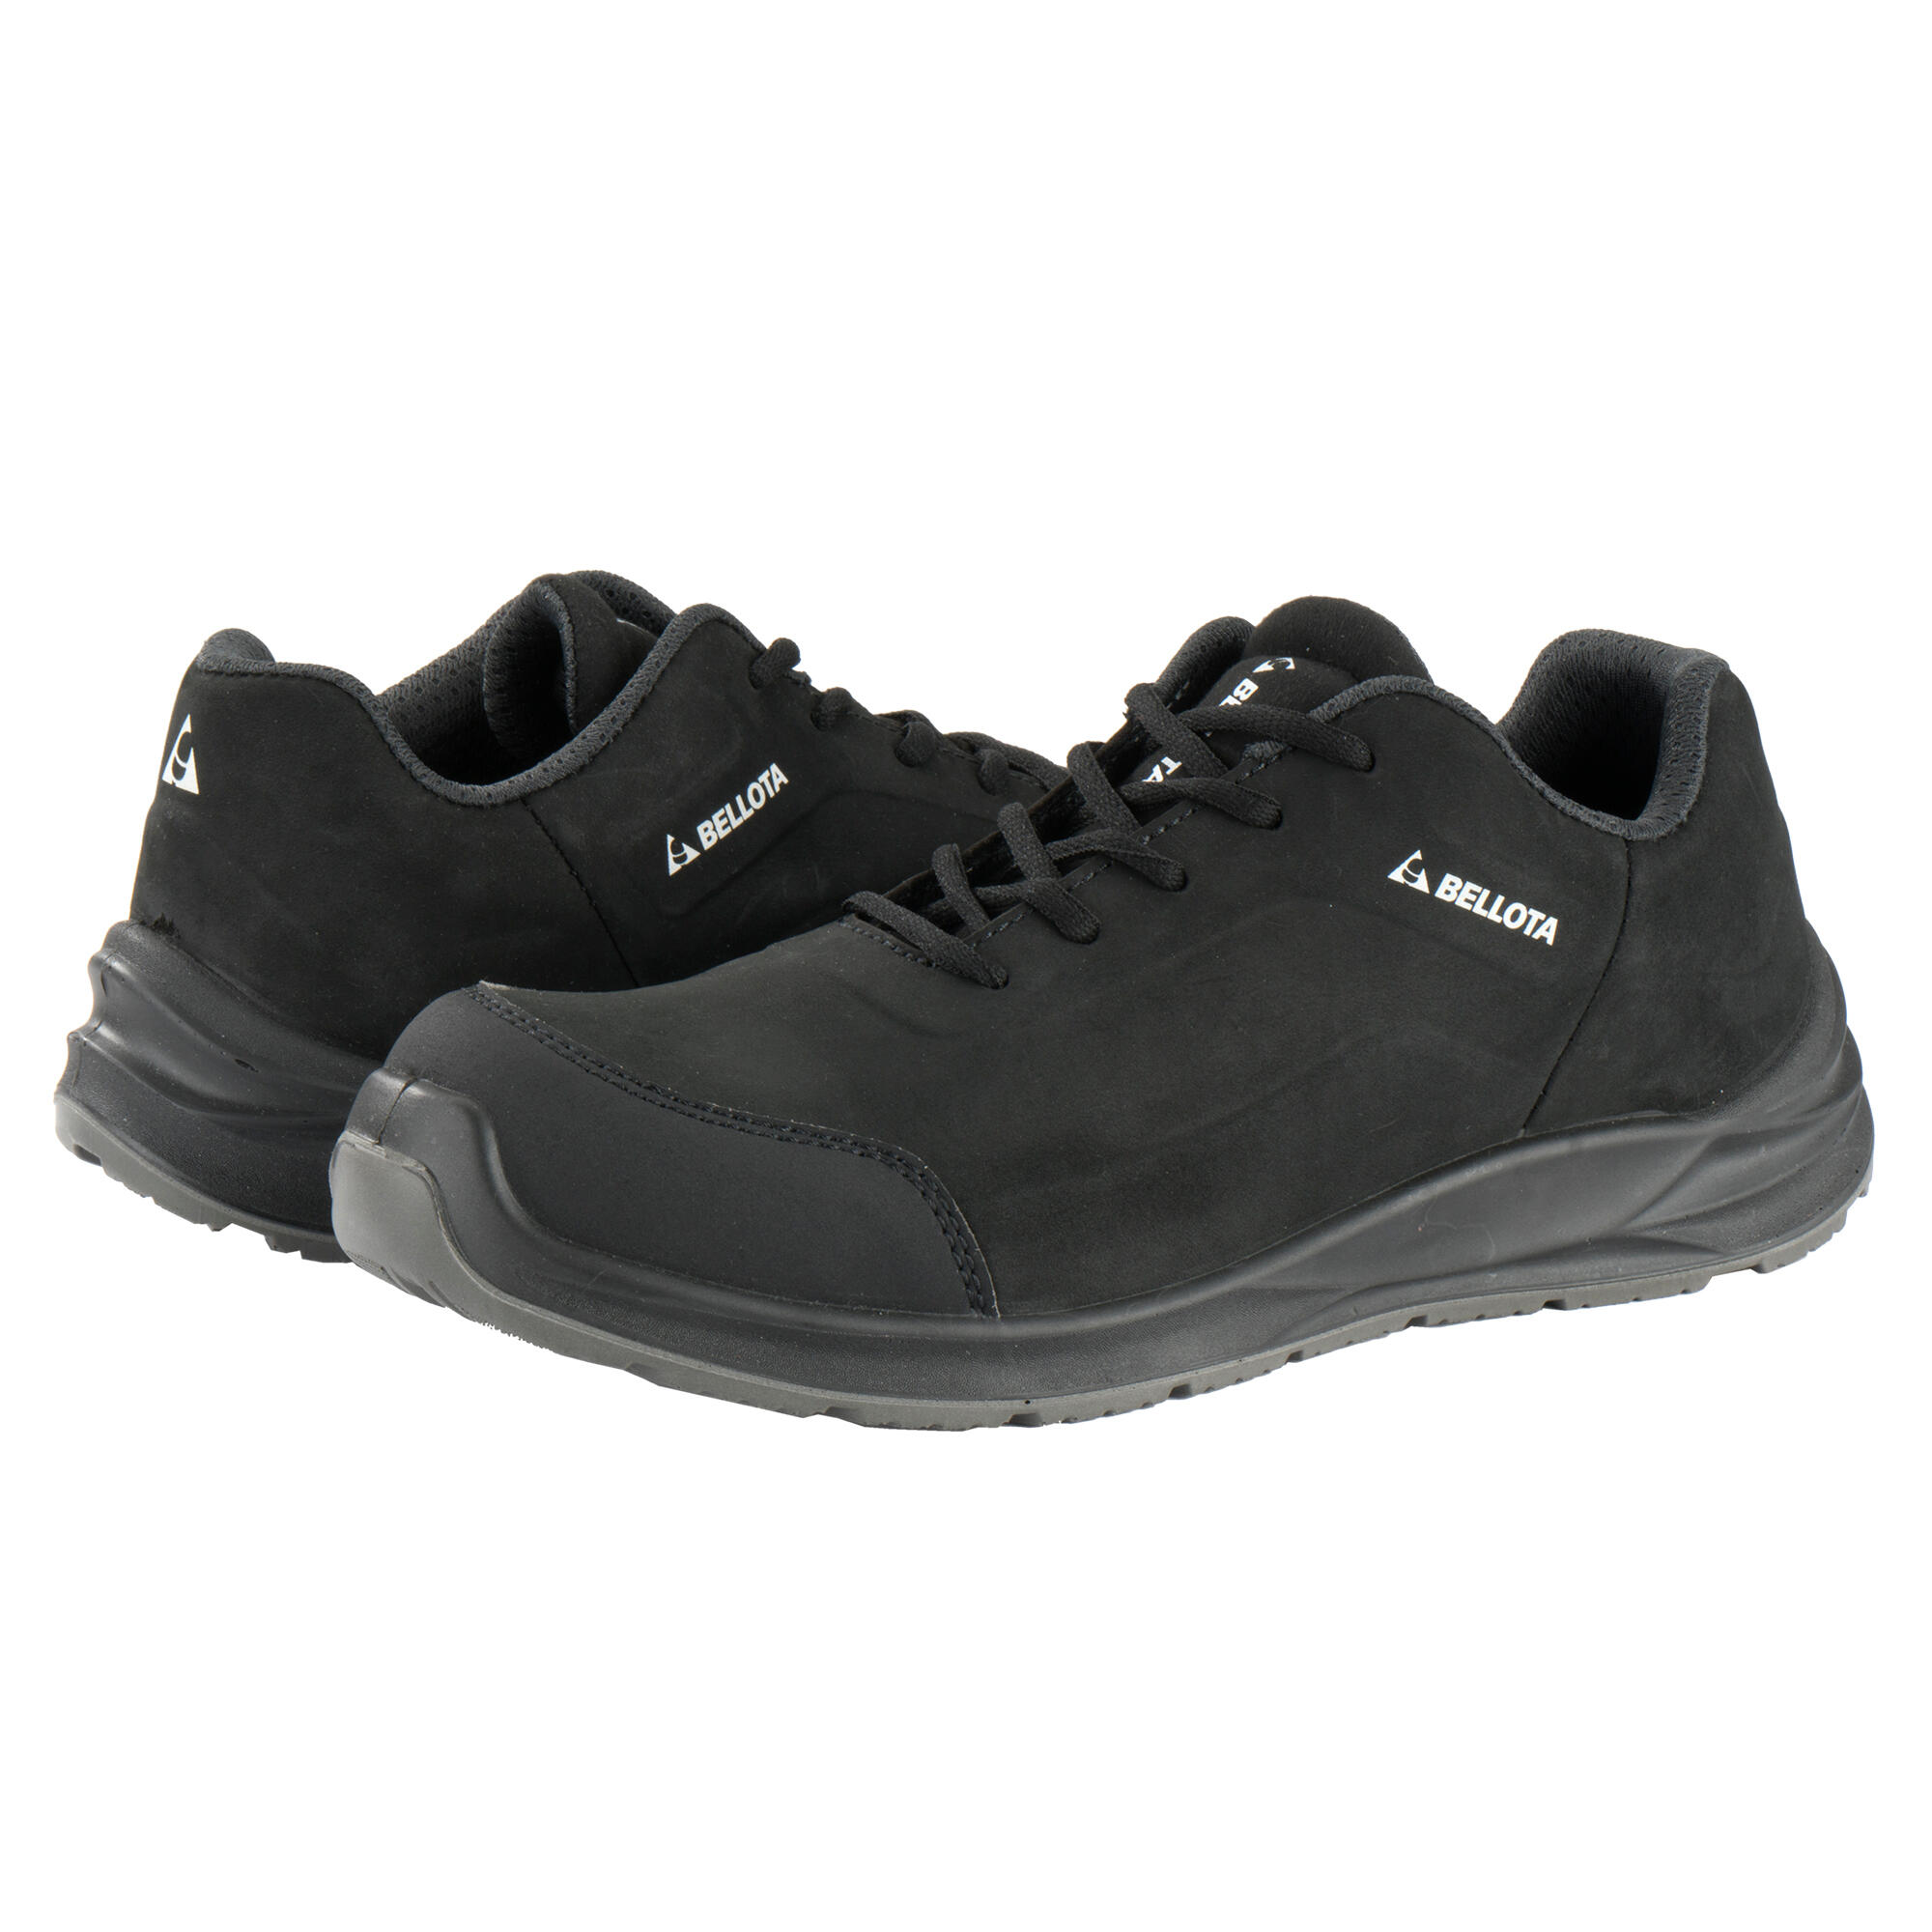 Zapatos seguridad s3 bellota flex carbón negro t47